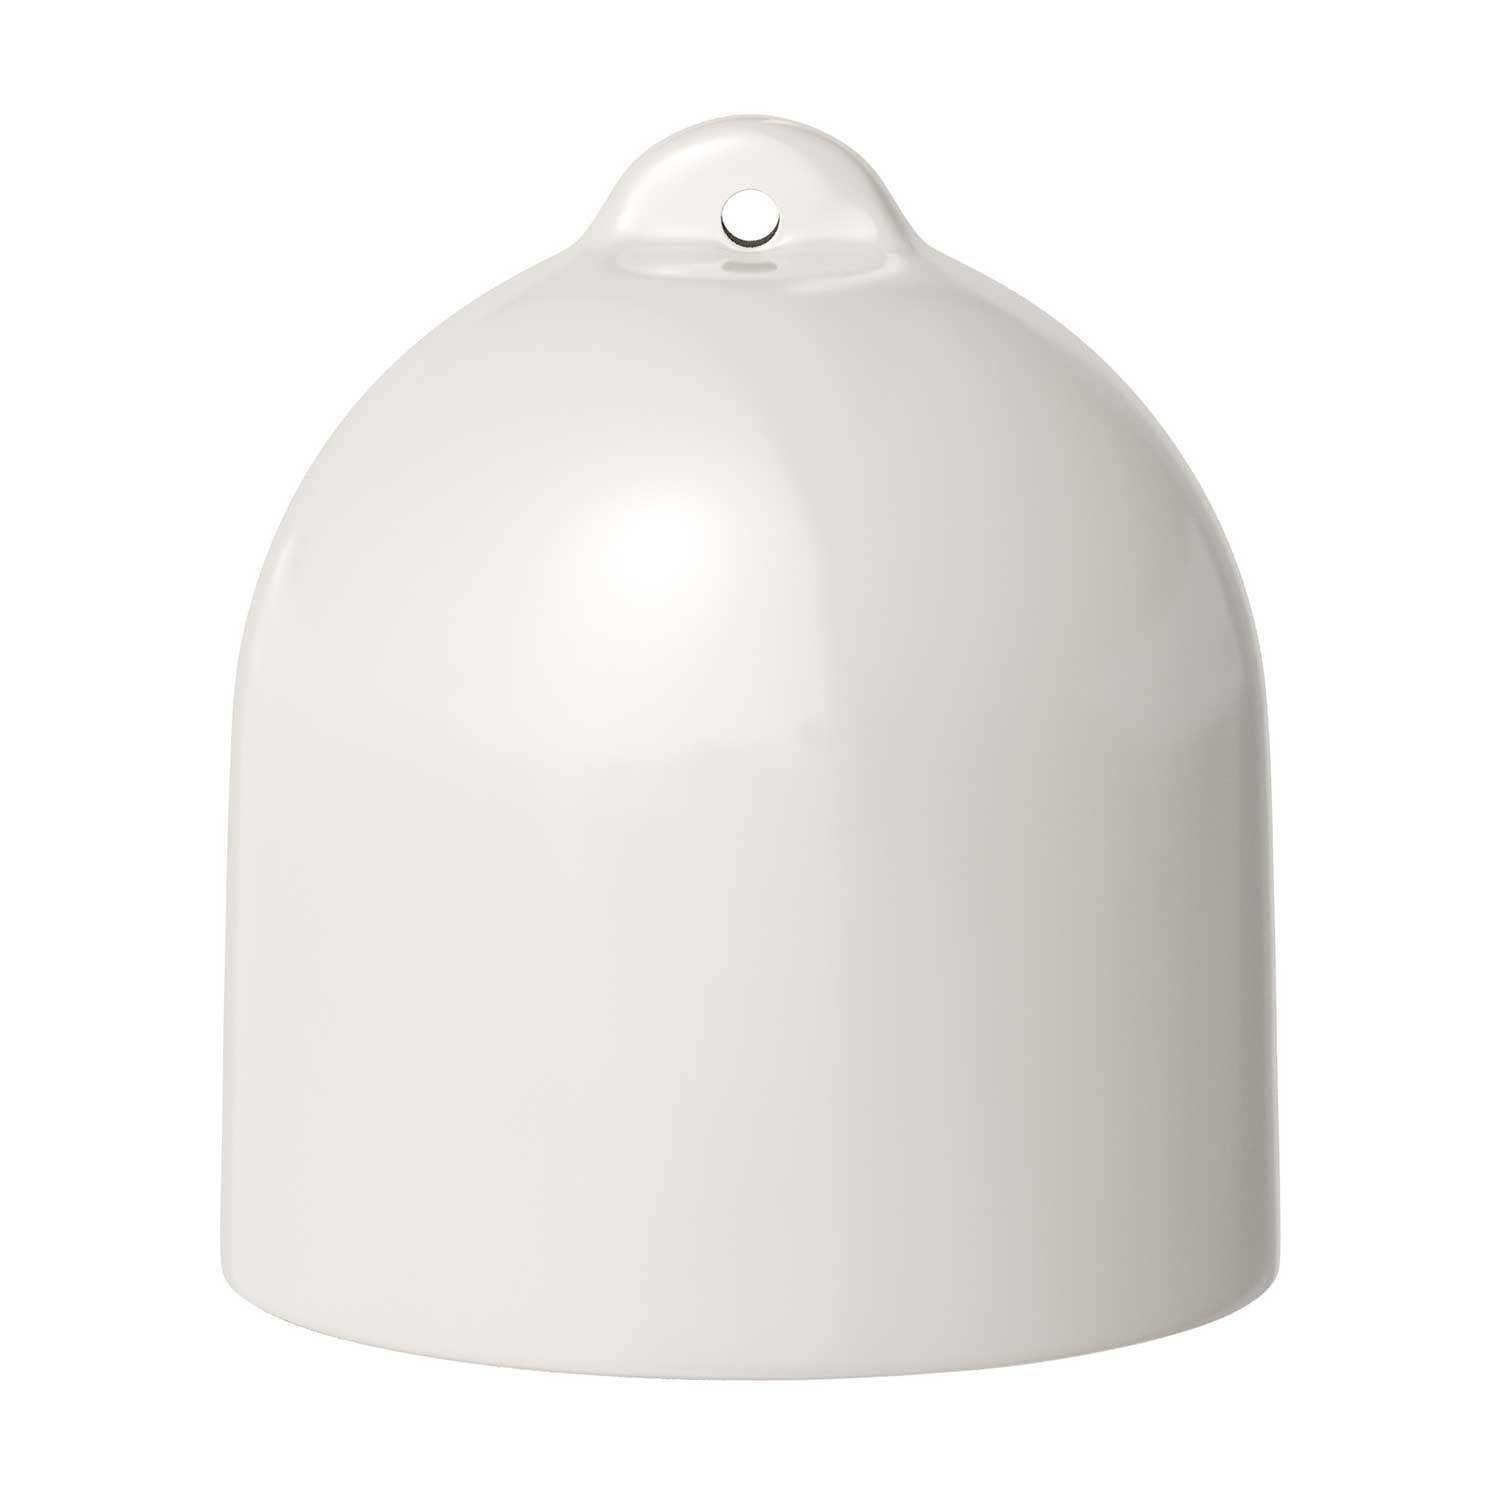 Klosz ceramiczny Bell M do lamp wiszących - Made in Italy